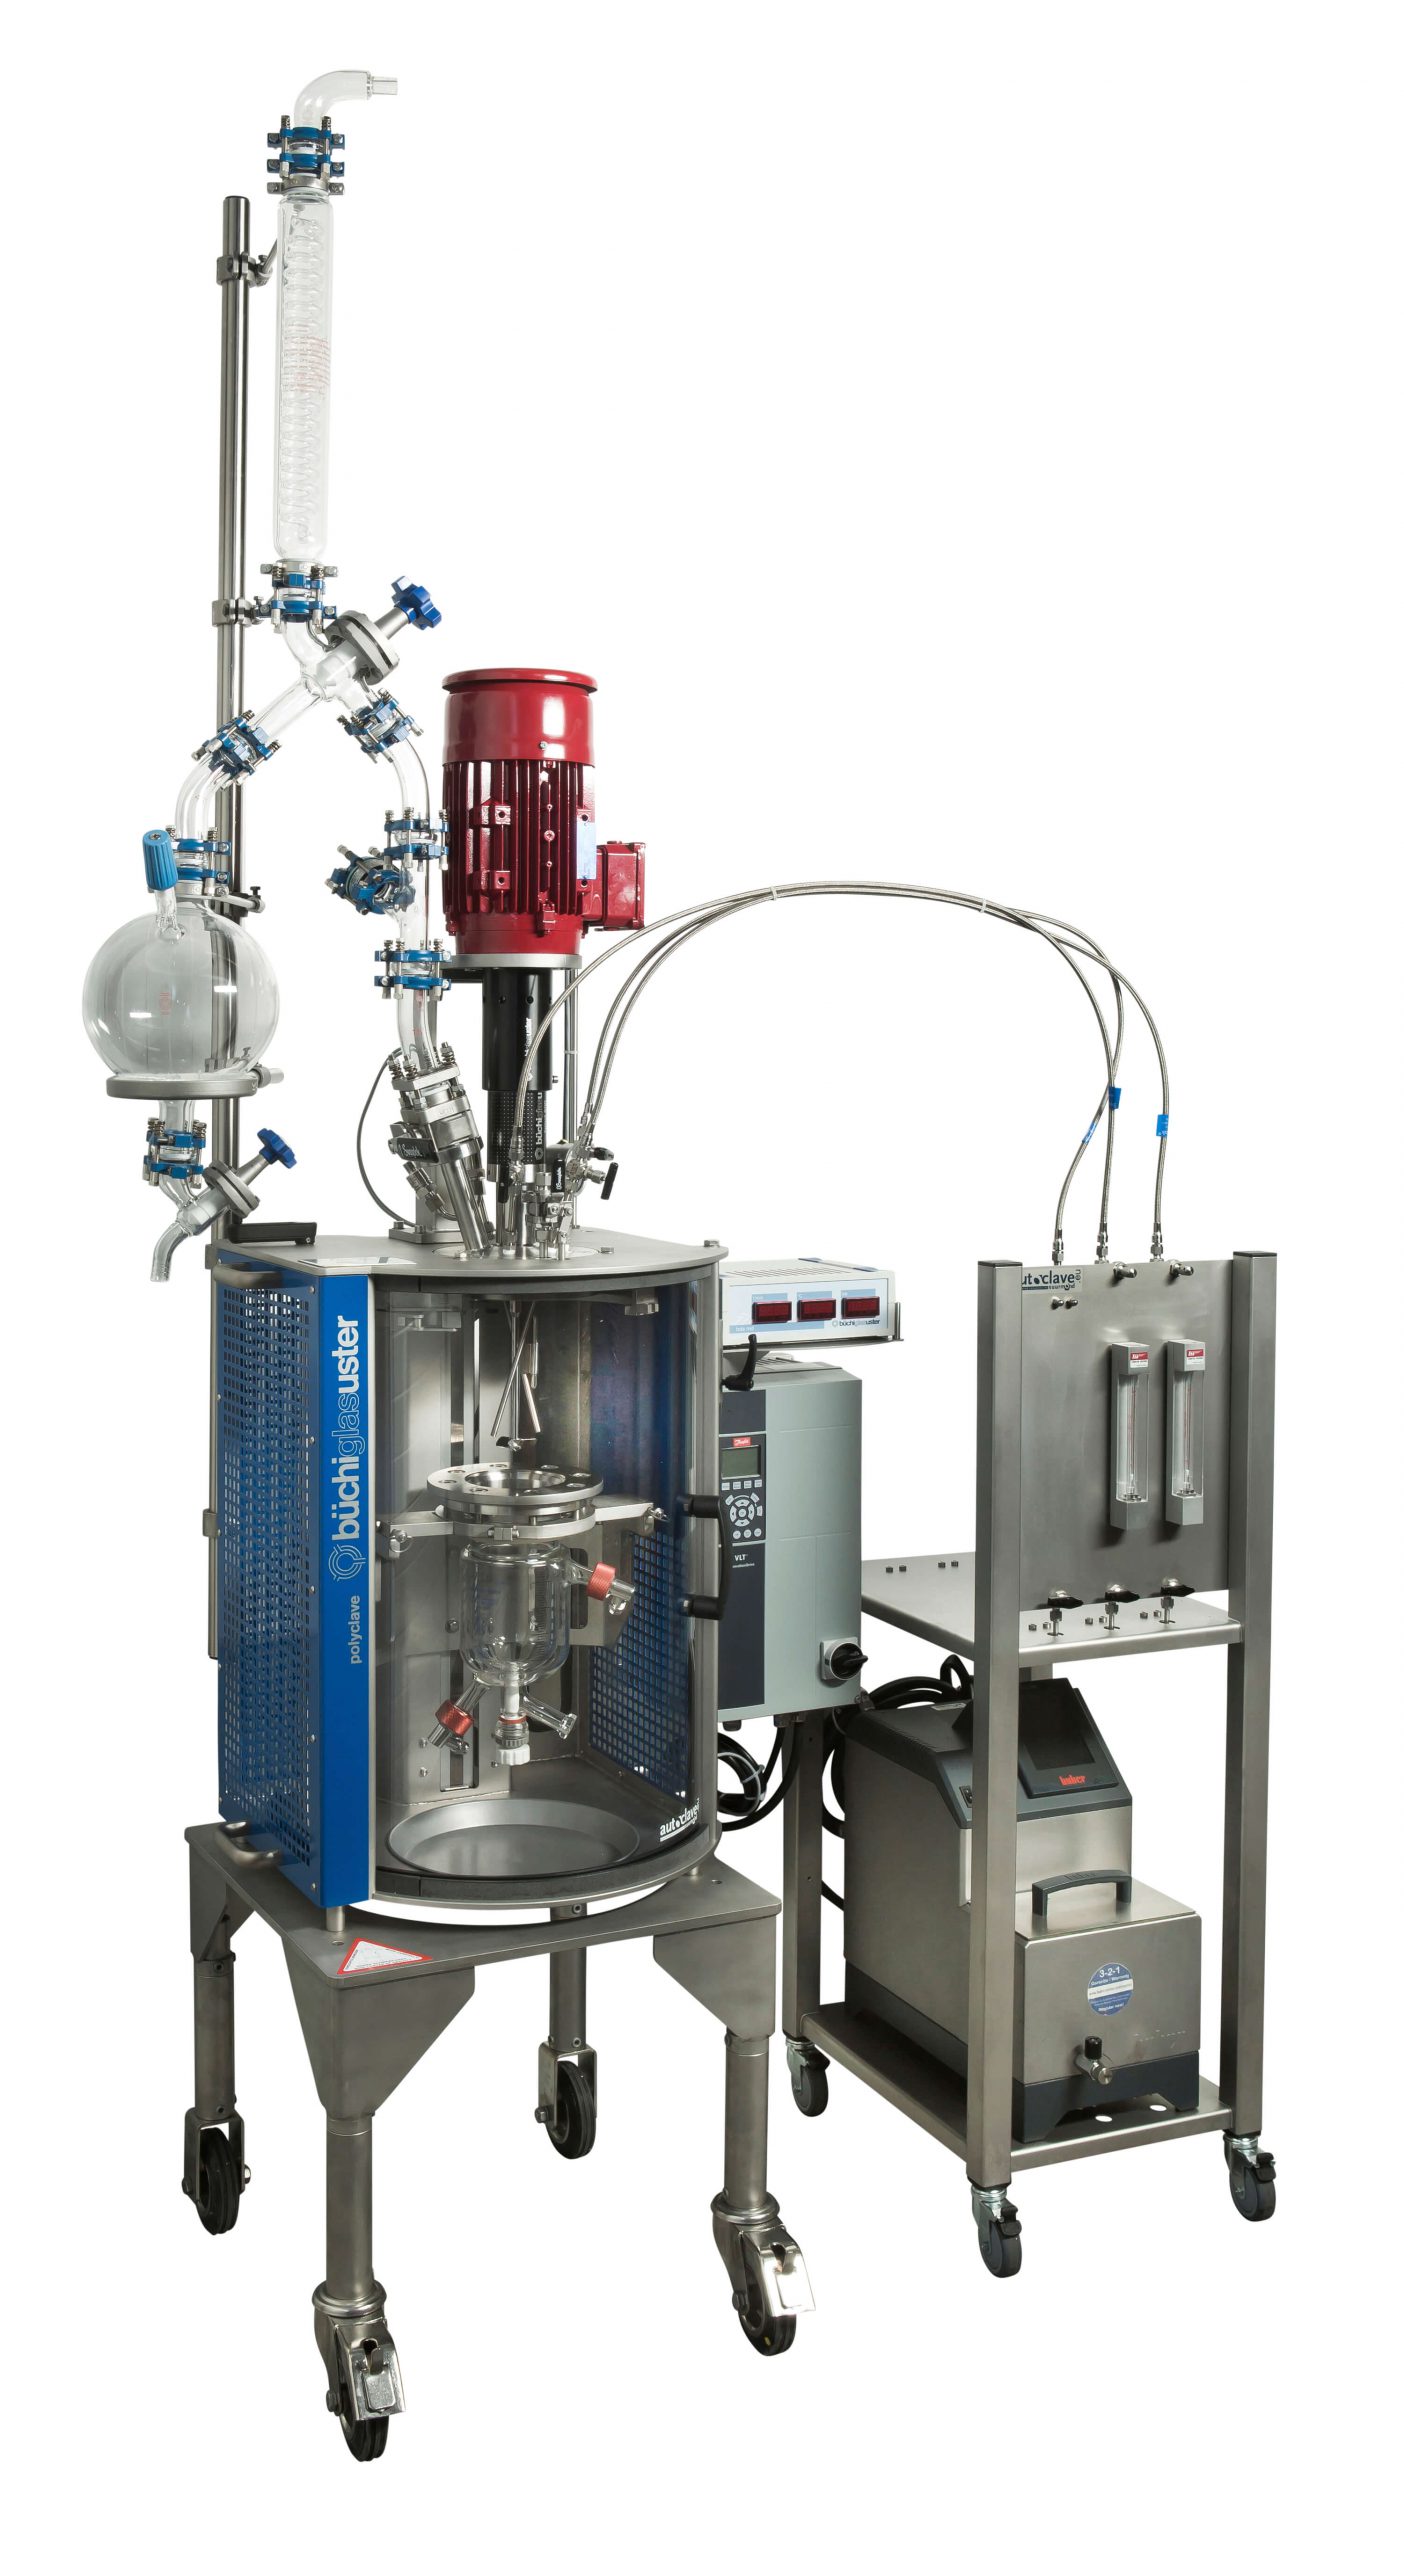 Polymerisation reactor with distillation set-up